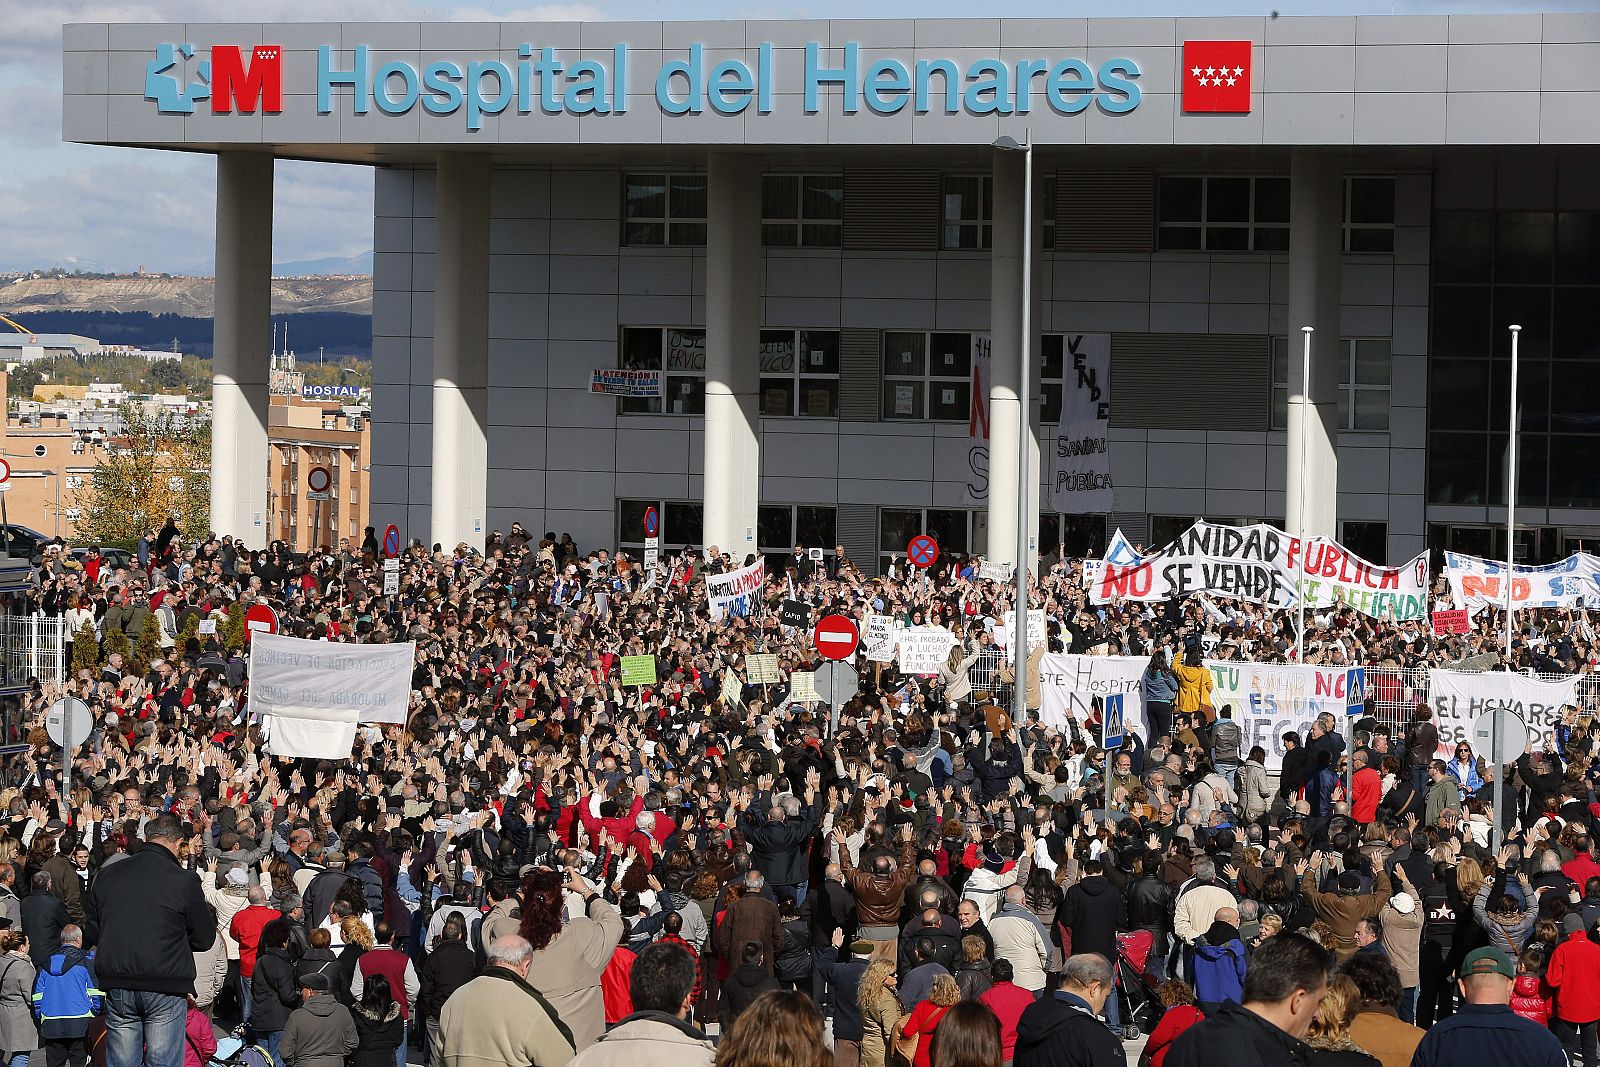 MARCHA EN DEFENSA DE HOSPITAL DE HENARES Y CONTRA SU PRIVATIZACIÓN